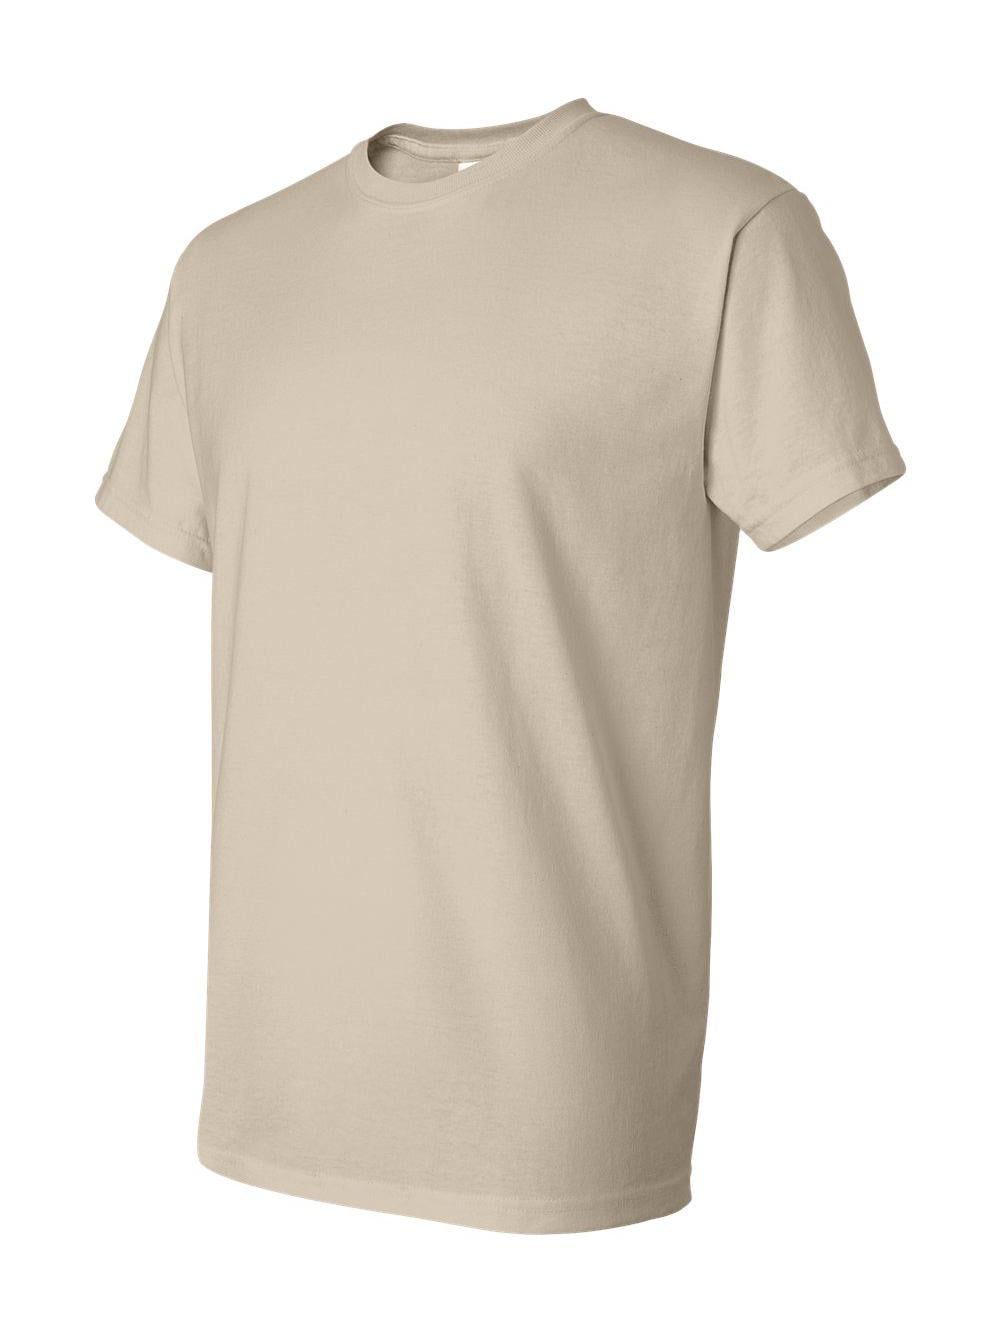 Gildan - DryBlend T-Shirt - 8000 - Sand - Size: 3XL - Walmart.com